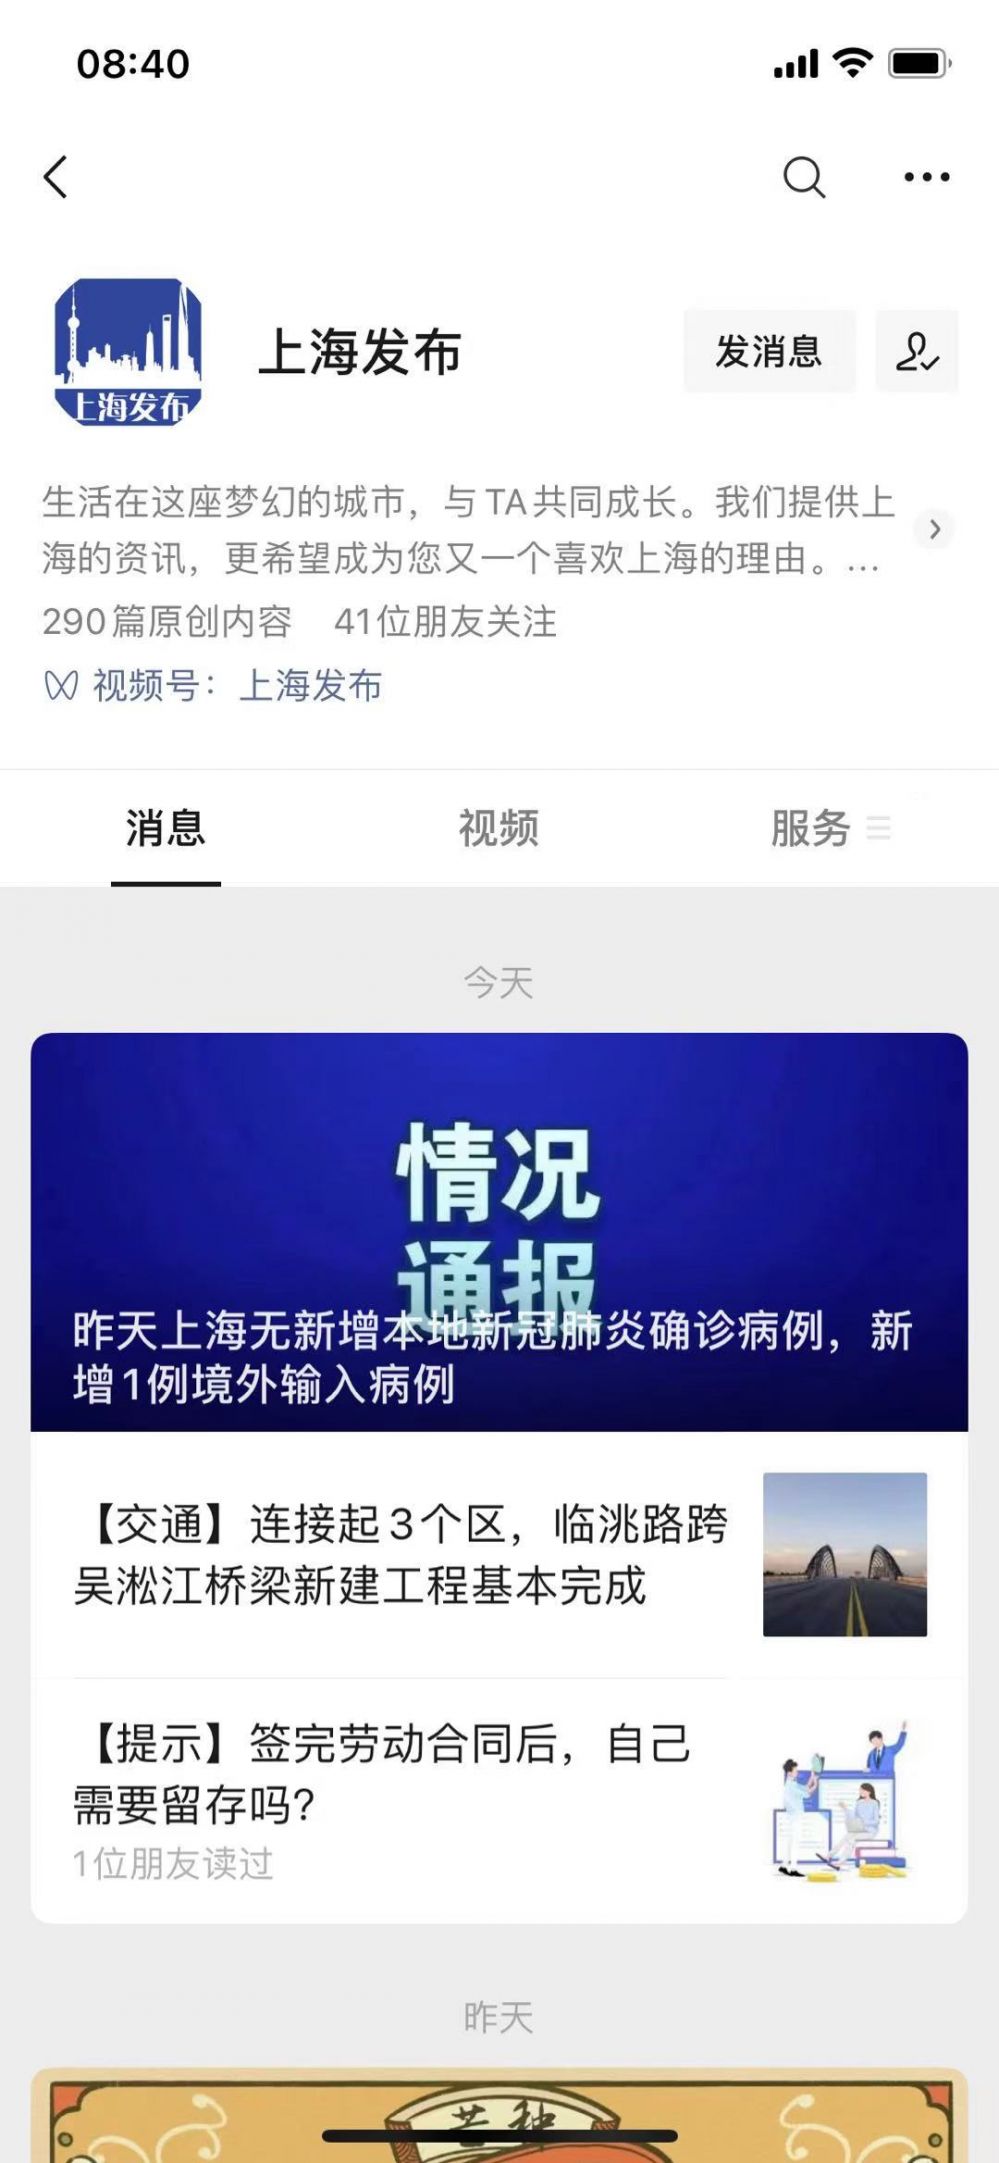 微信公众号上海发布